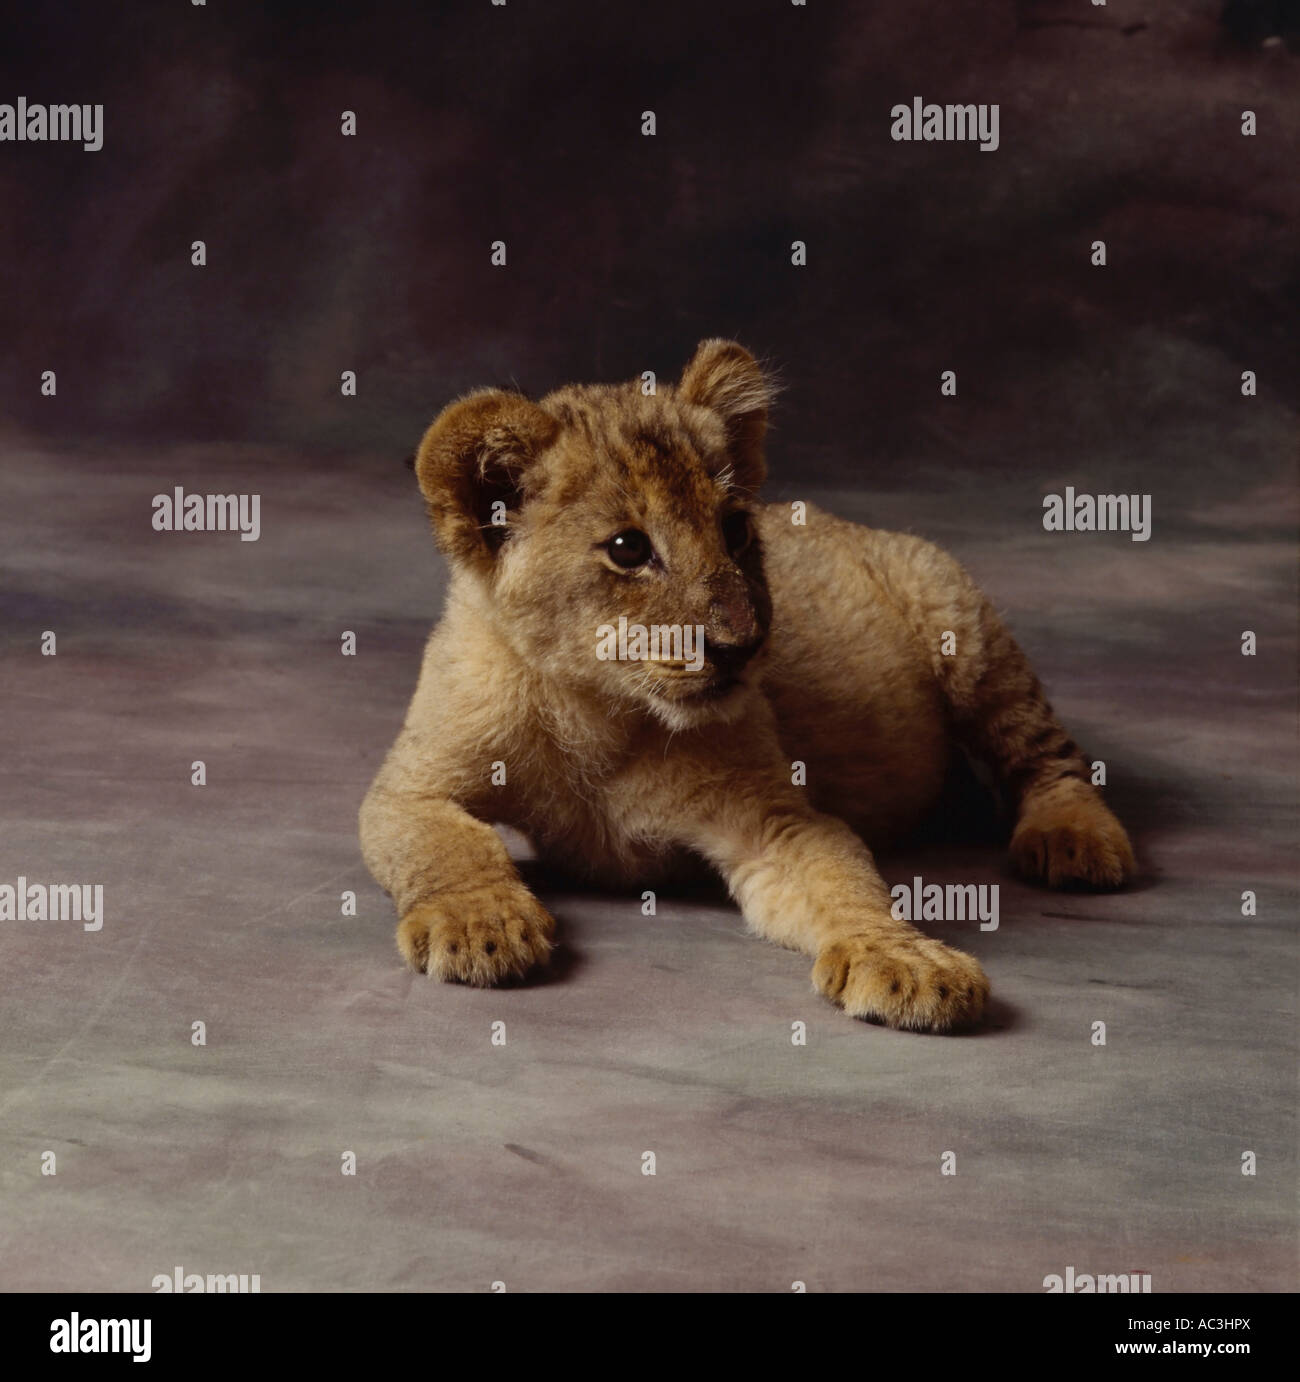 portrait of lion cub Stock Photo